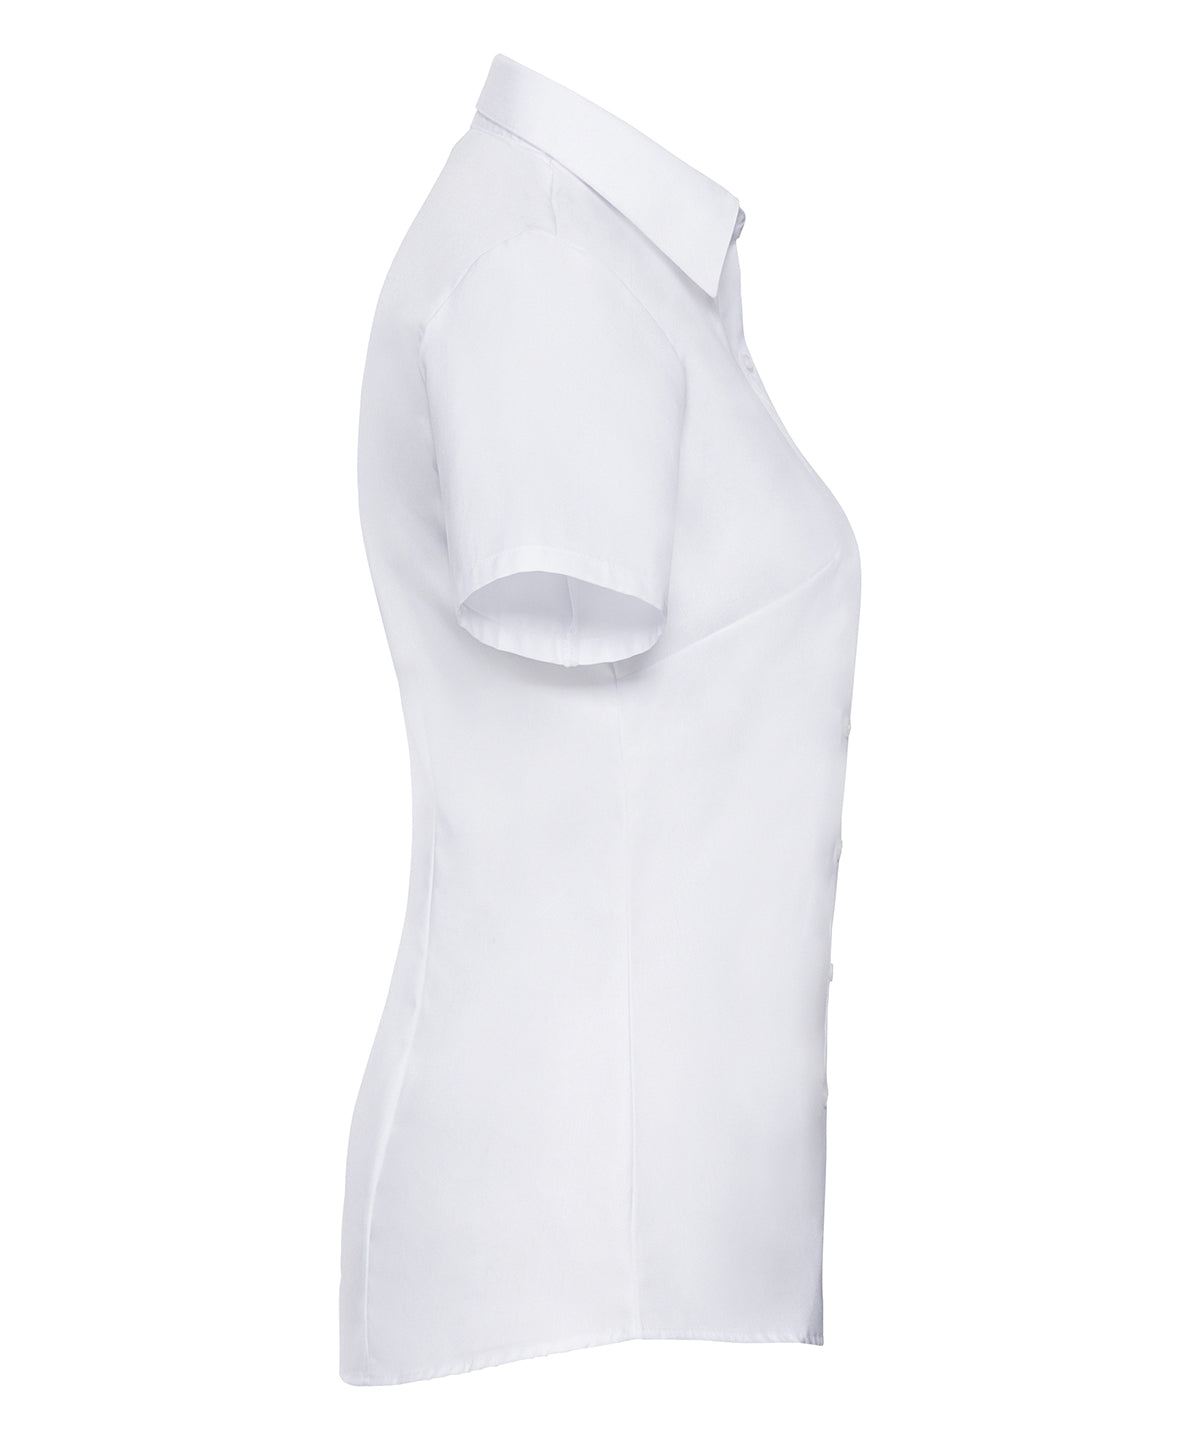 Women's short sleeve herringbone shirt